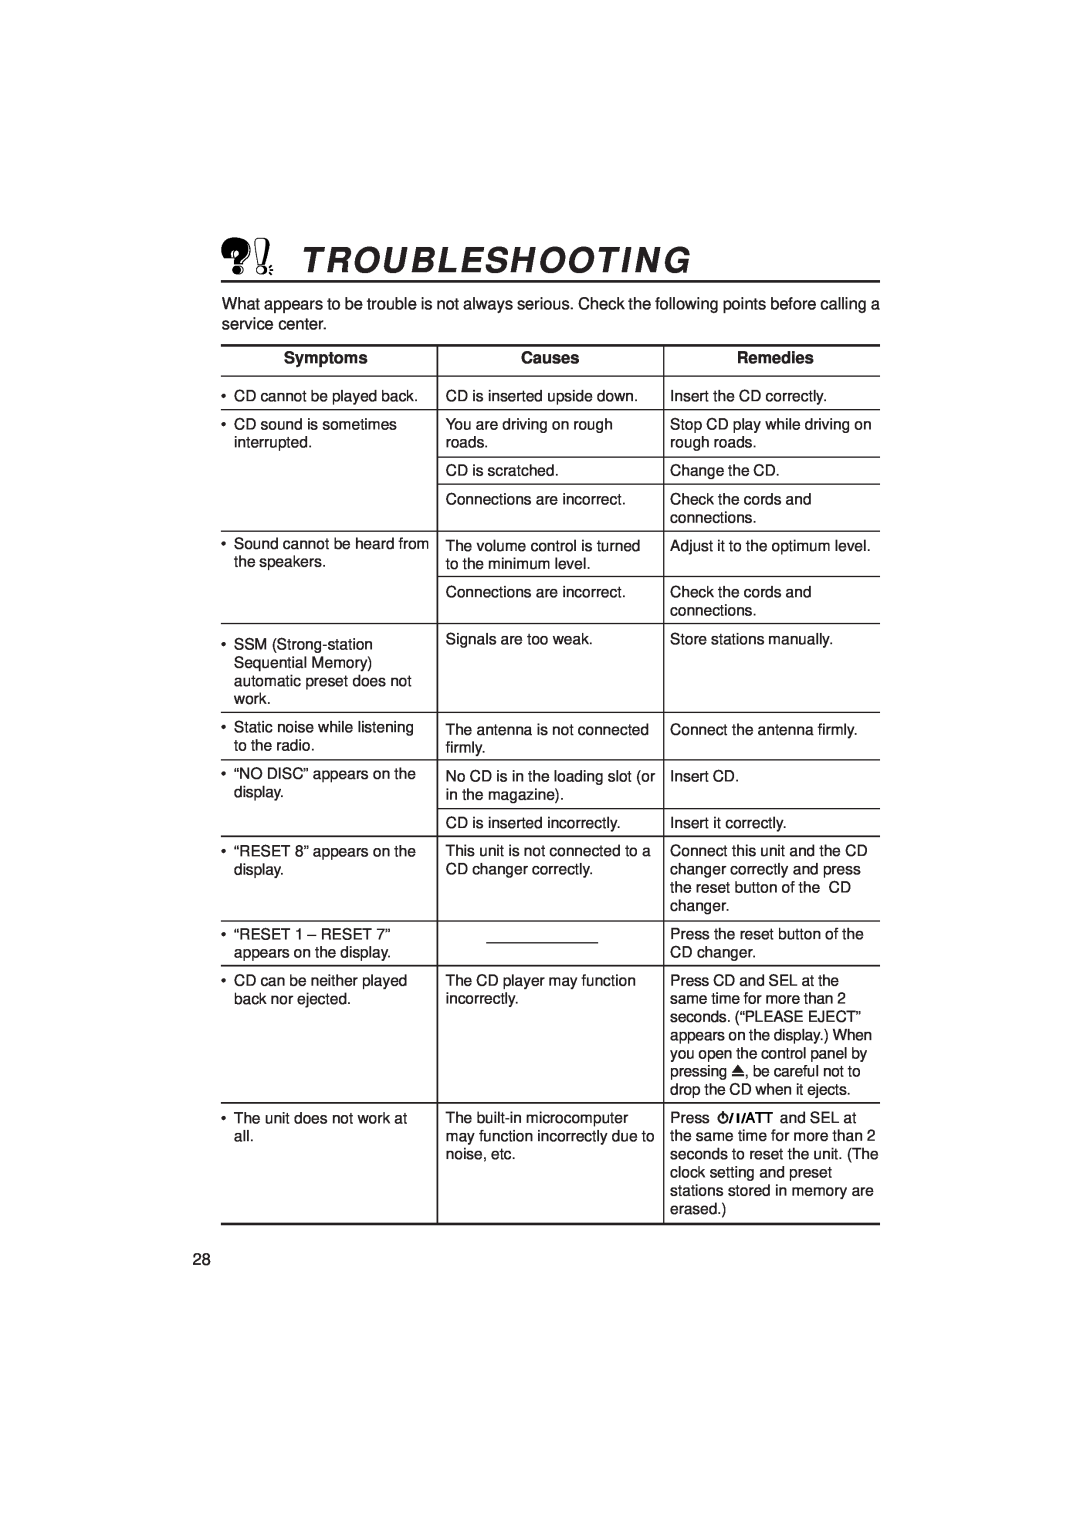 JVC KD-SX939/SX930 manual Troubleshooting, Symptoms, Causes, Remedies 